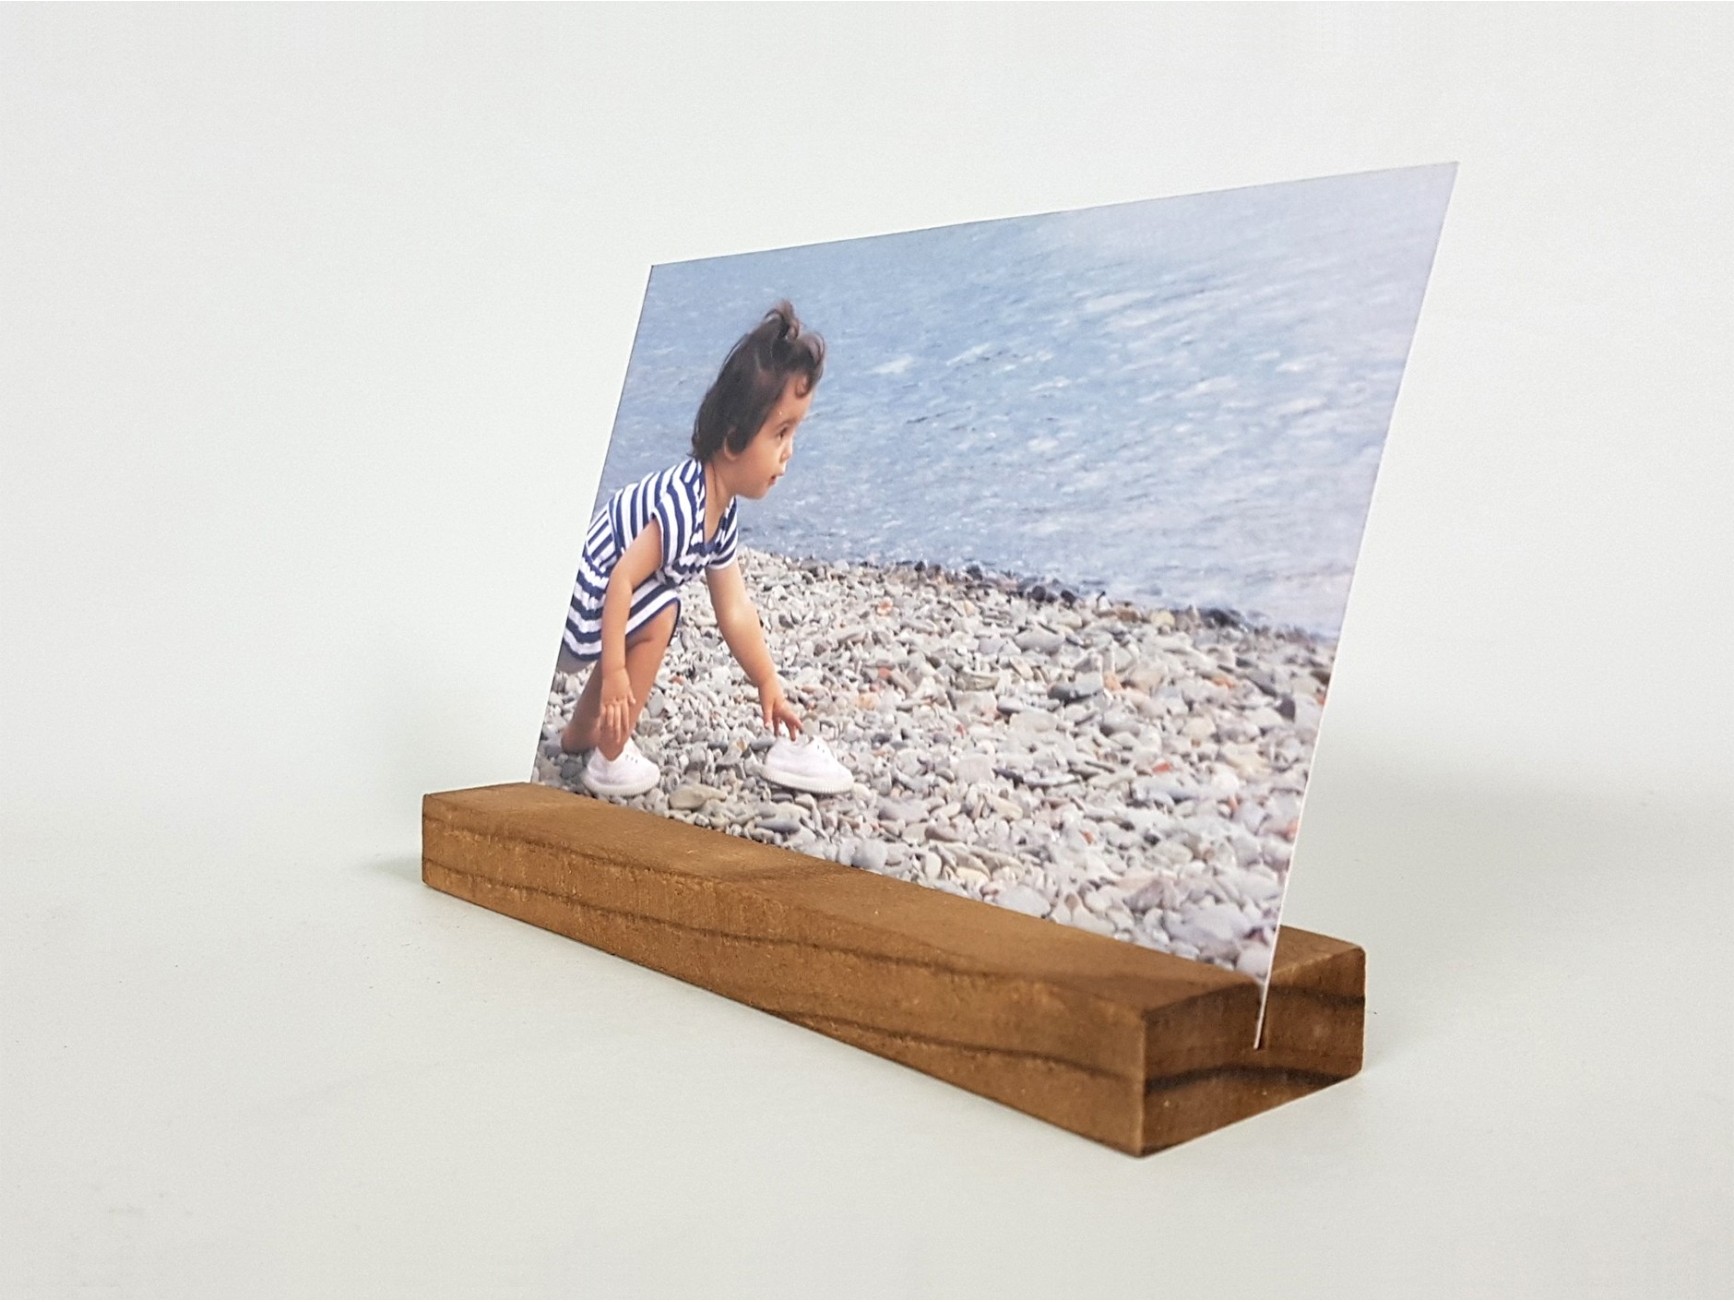 Taco madera para fotos, el soporte ideal para tus fotografías